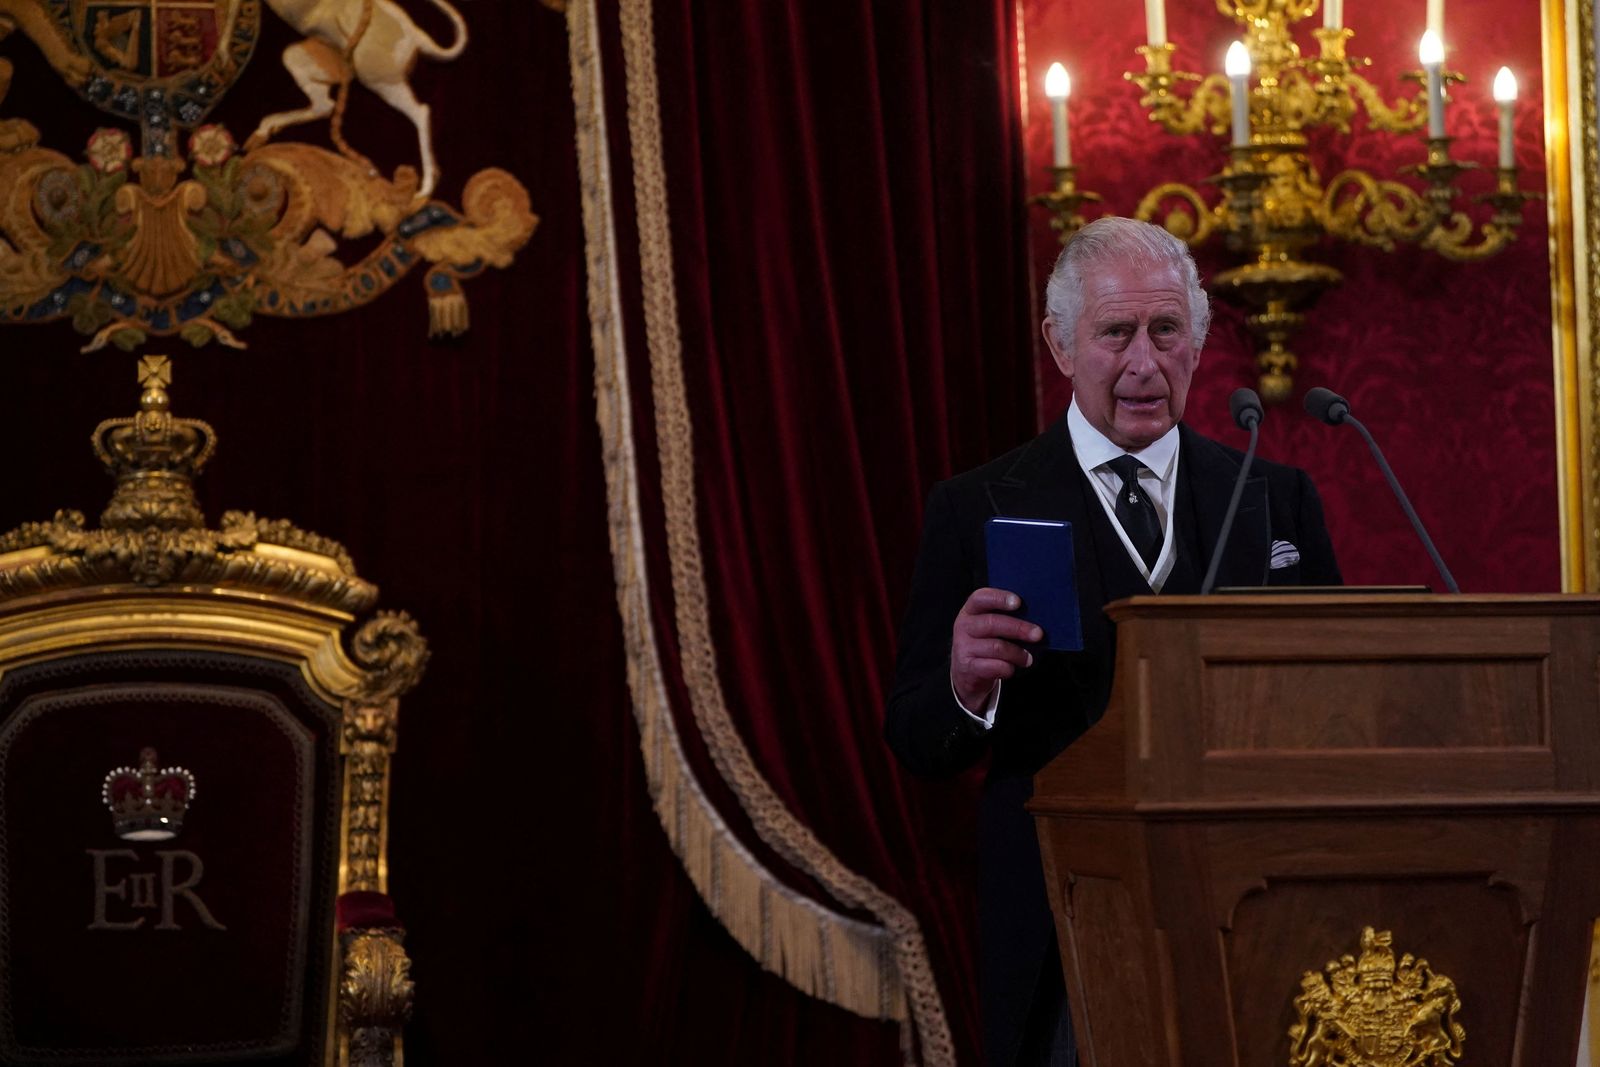 ملك بريطانيا تشارلز الثالث يلقي خطابا بعد إعلان تنصيبه رسمياً- في 10 سبتمبر 2022 - REUTERS